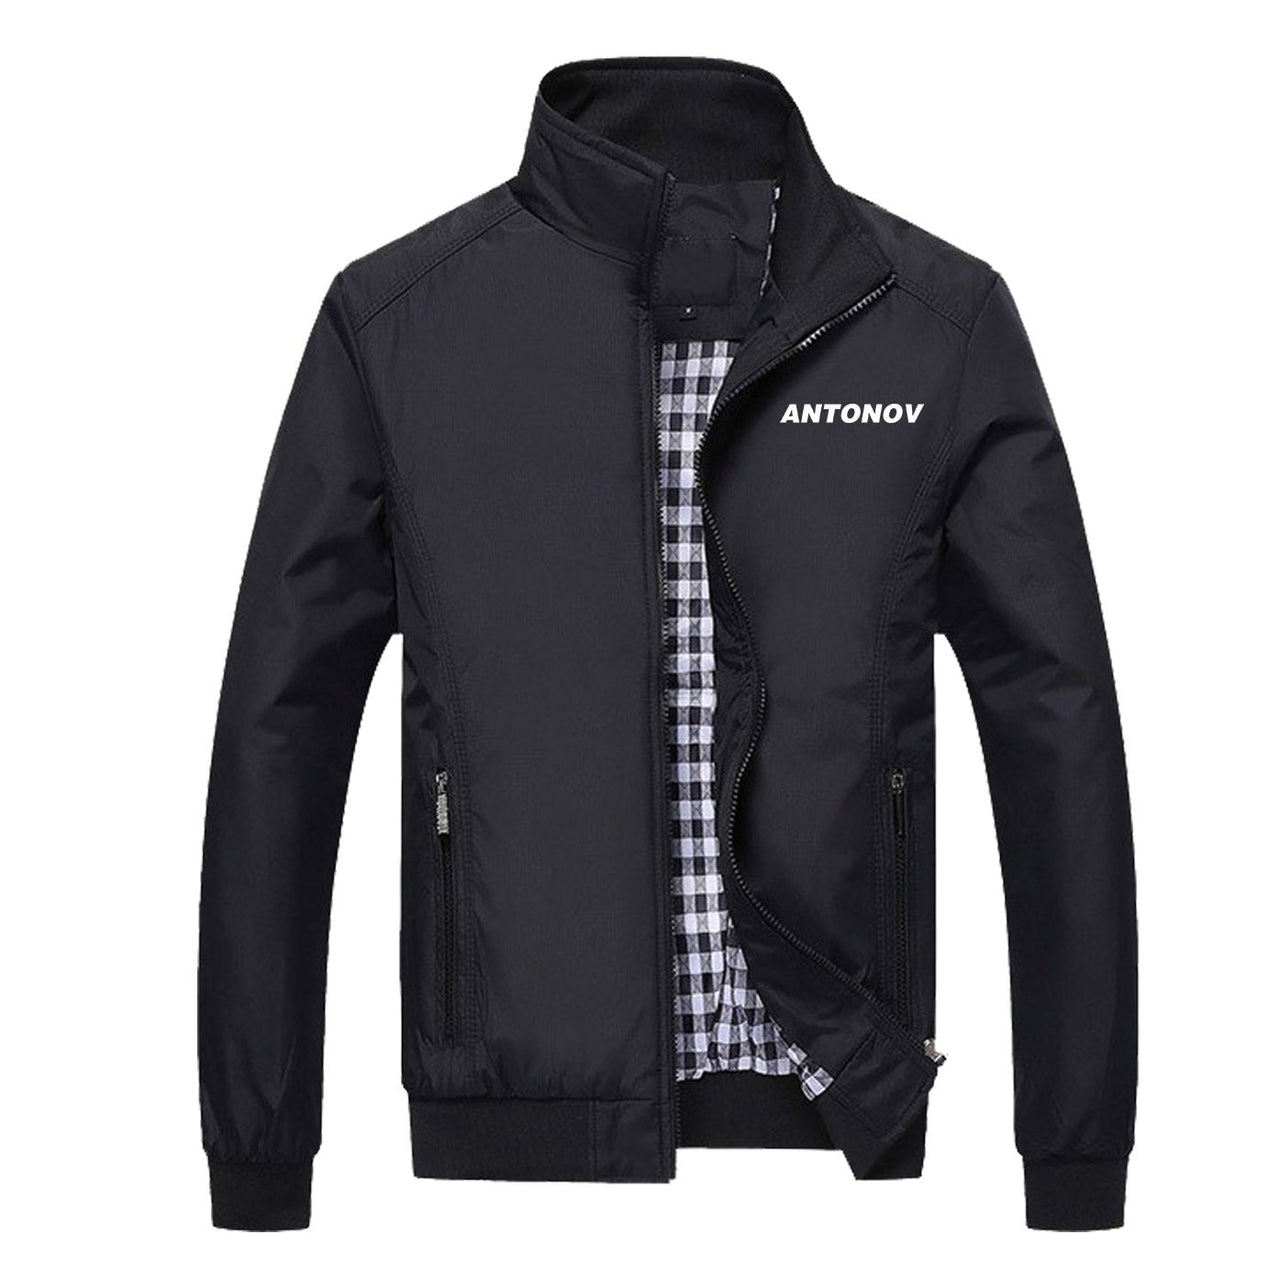 Antonov & Text Designed Stylish Jackets